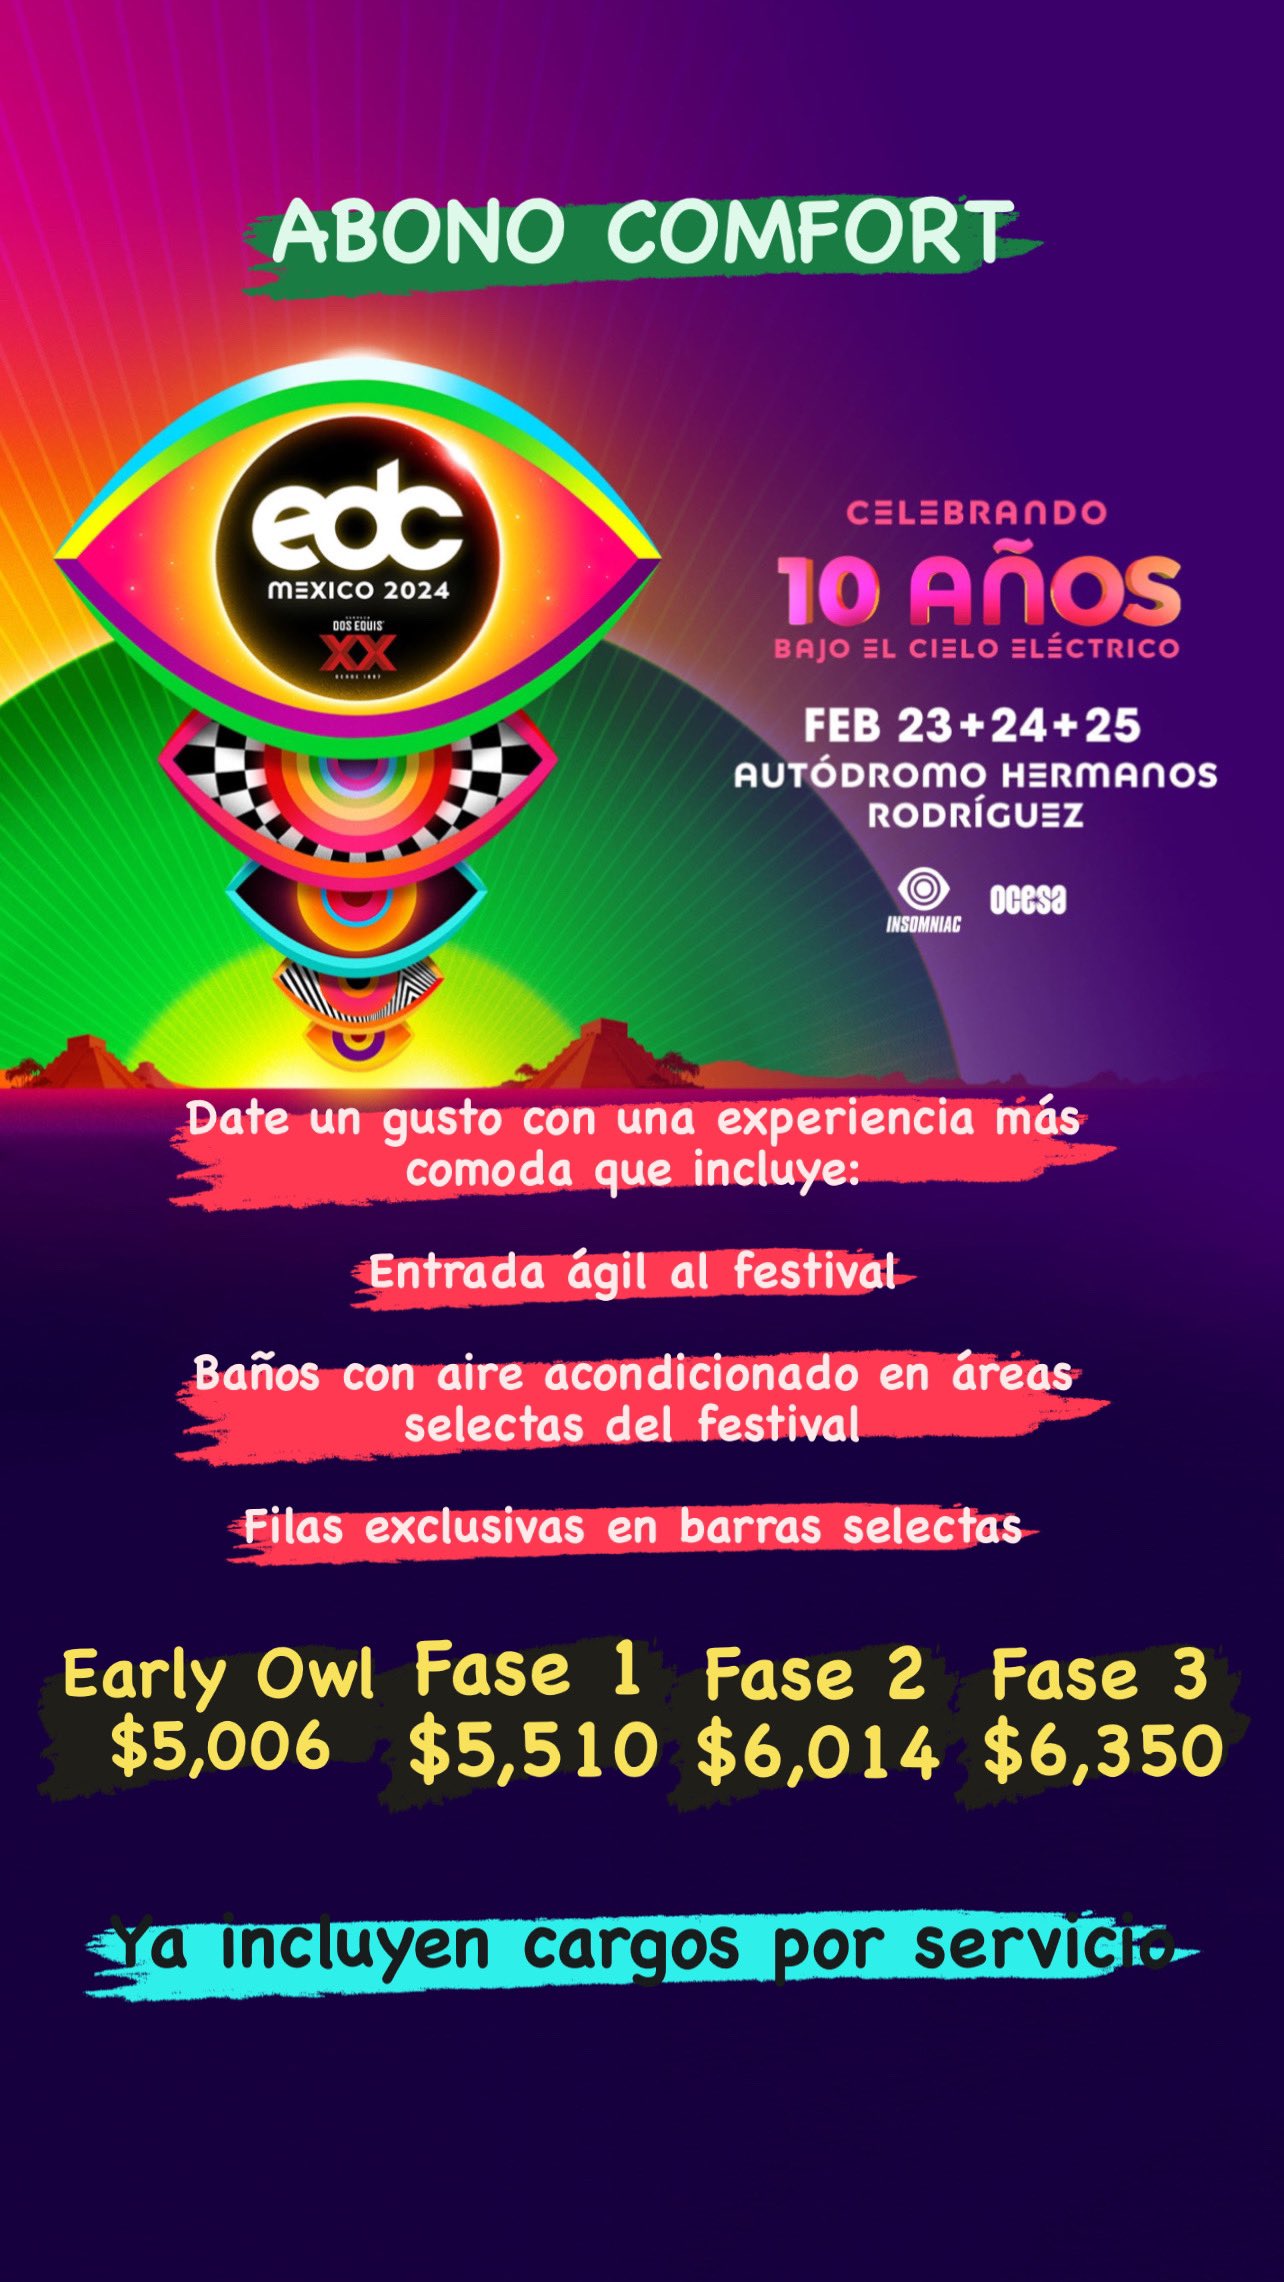 EDC México 2024: Insomniac y Ocesa presentan detalles del evento 2